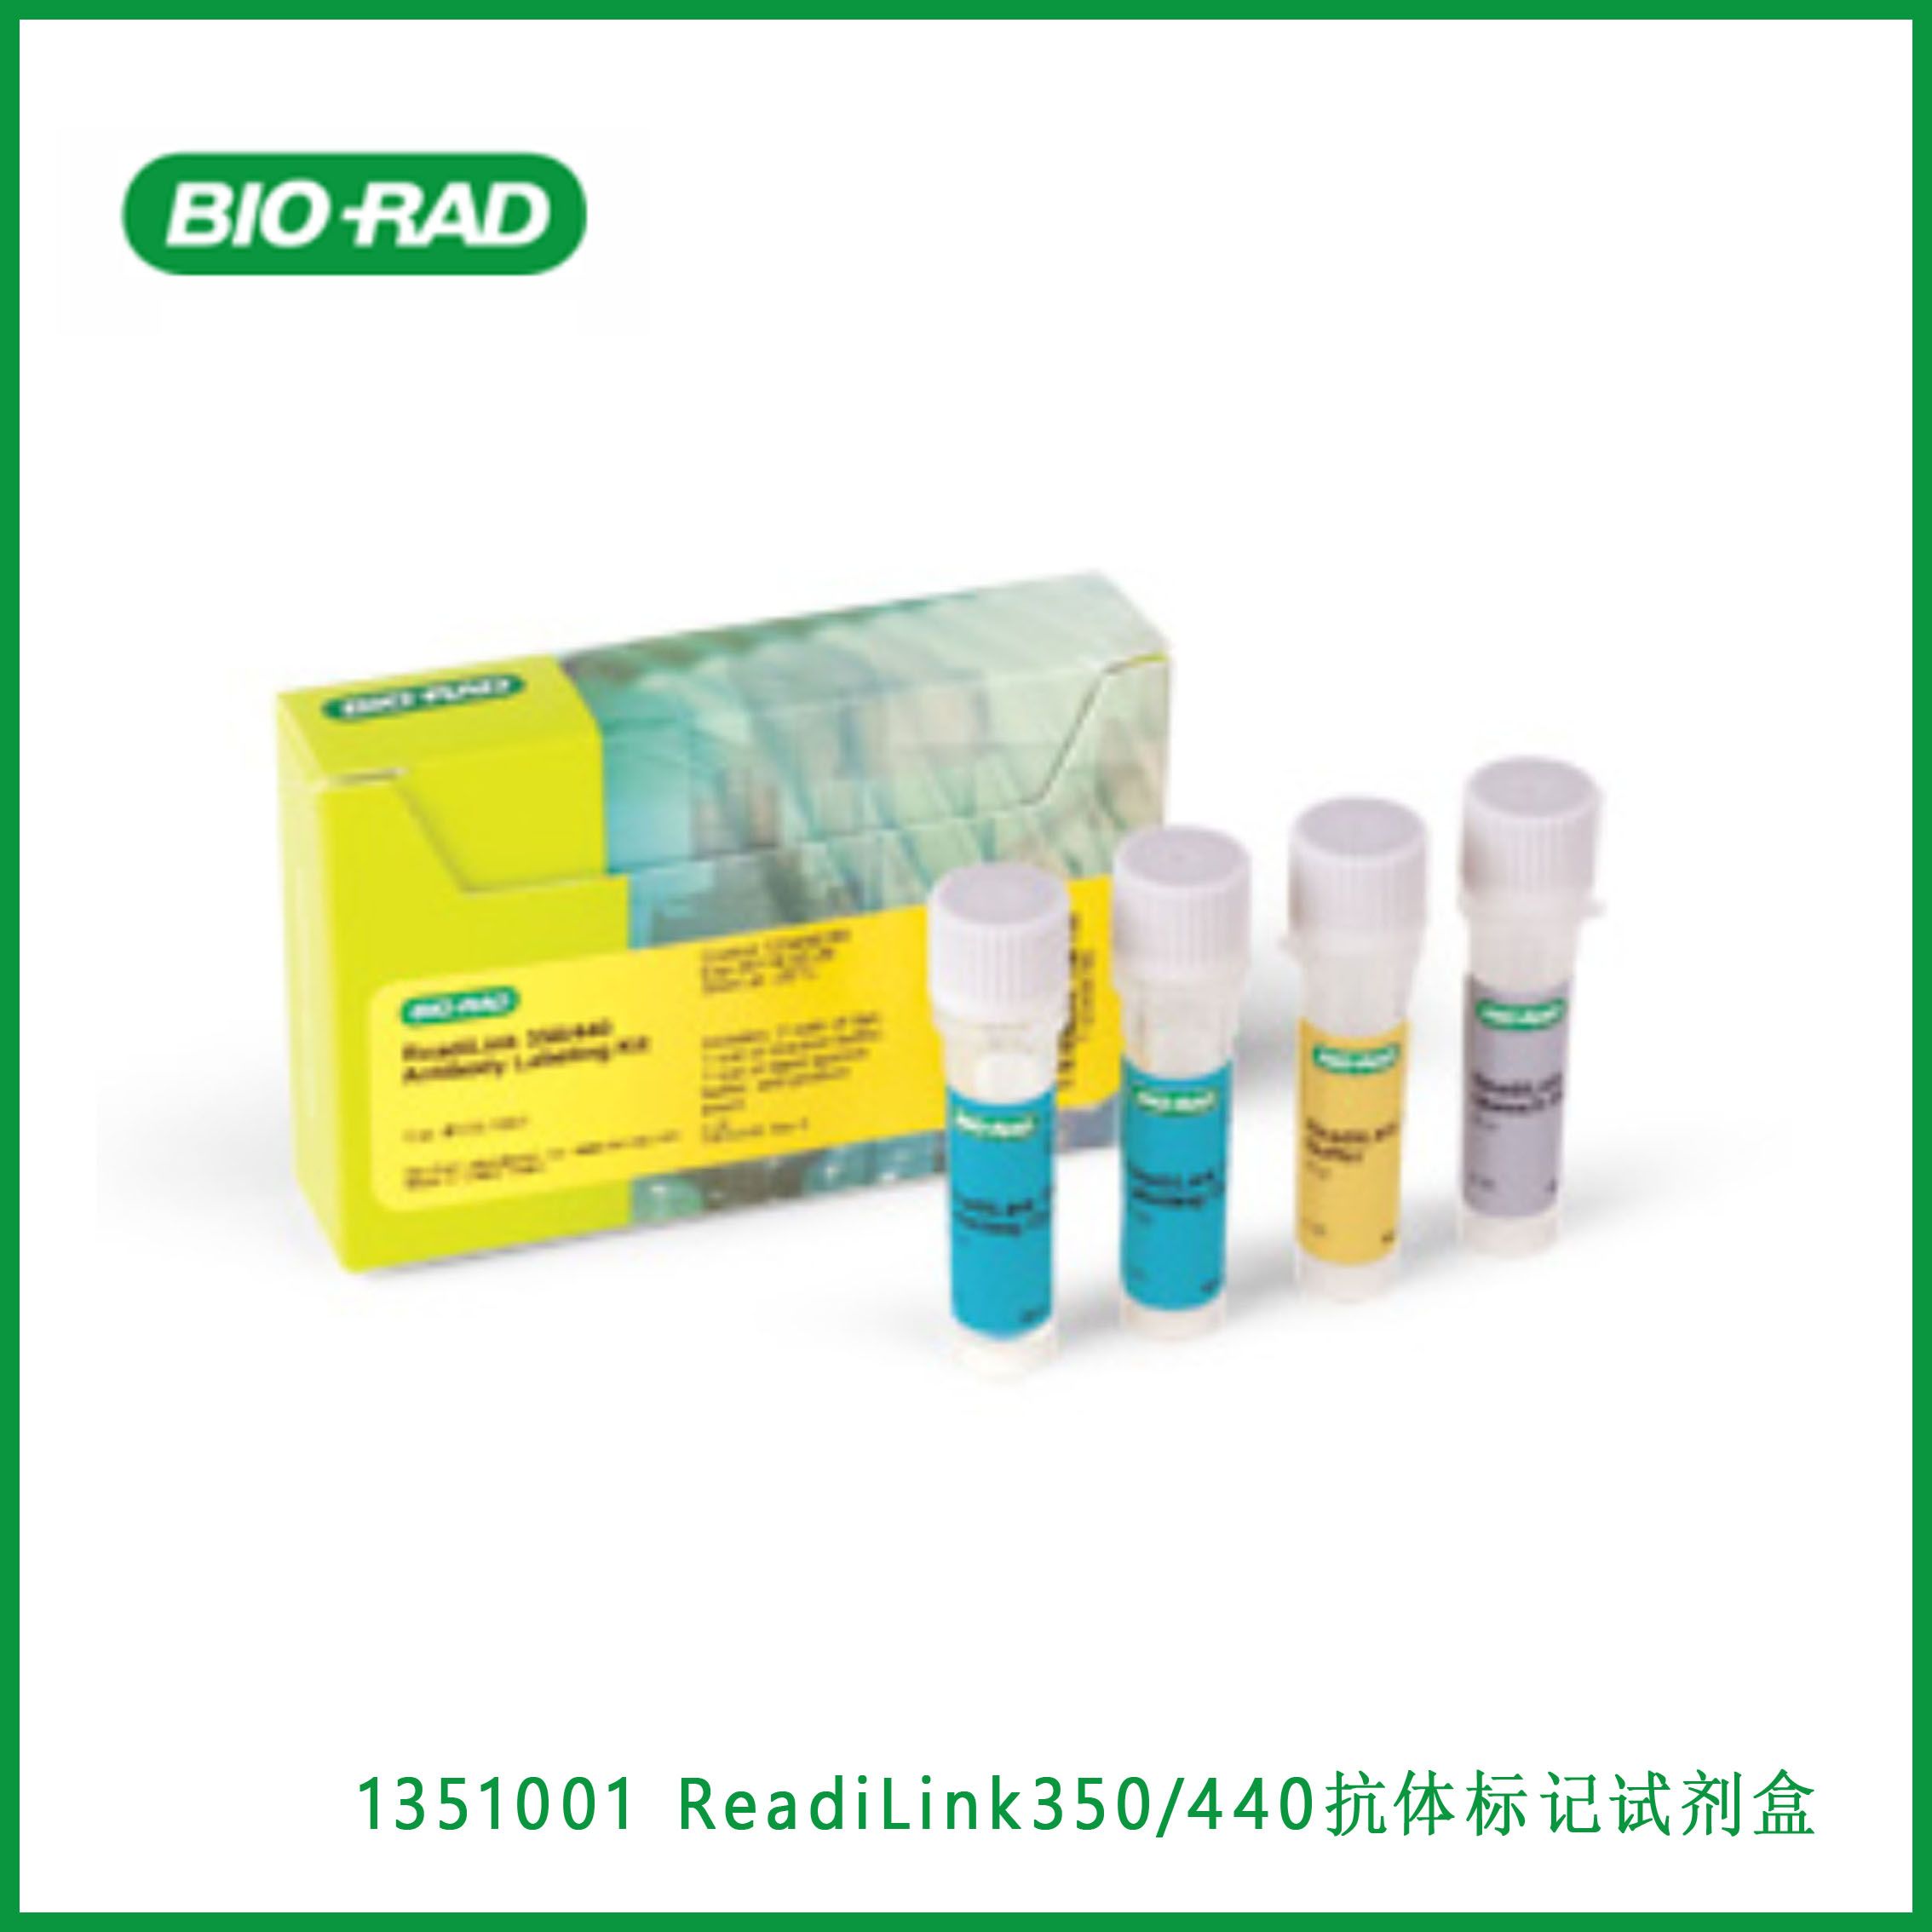 伯乐Bio-rad 1351001ReadiLink 350/440 Antibody Labeling Kit， ReadiLink 350/440抗体标记试剂盒，现货